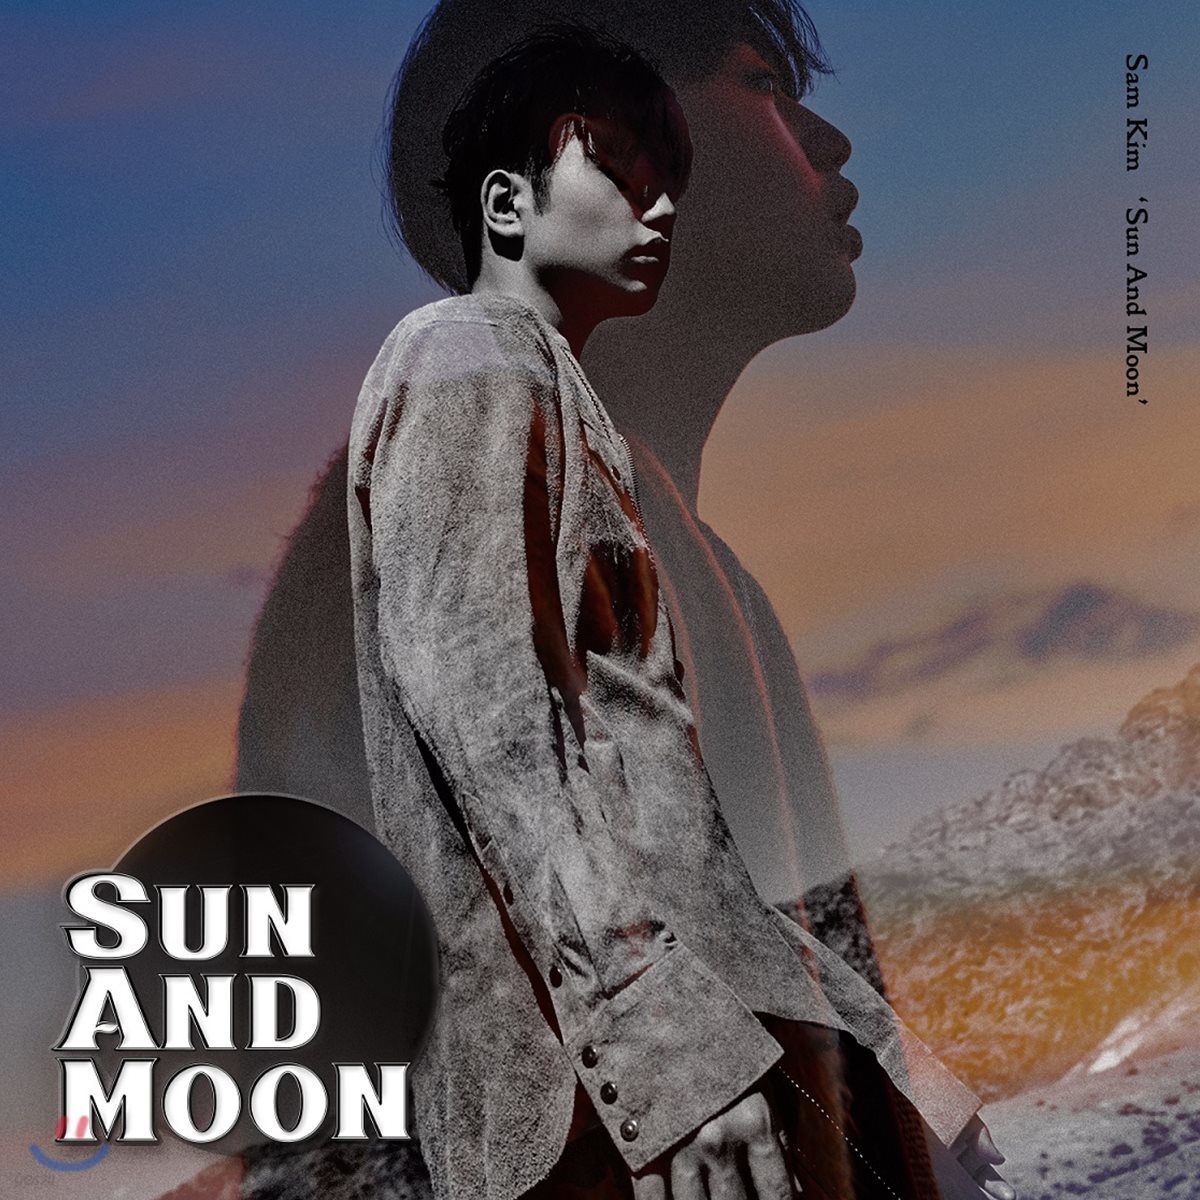 샘김 (Sam Kim) 1집 - Sun And Moon